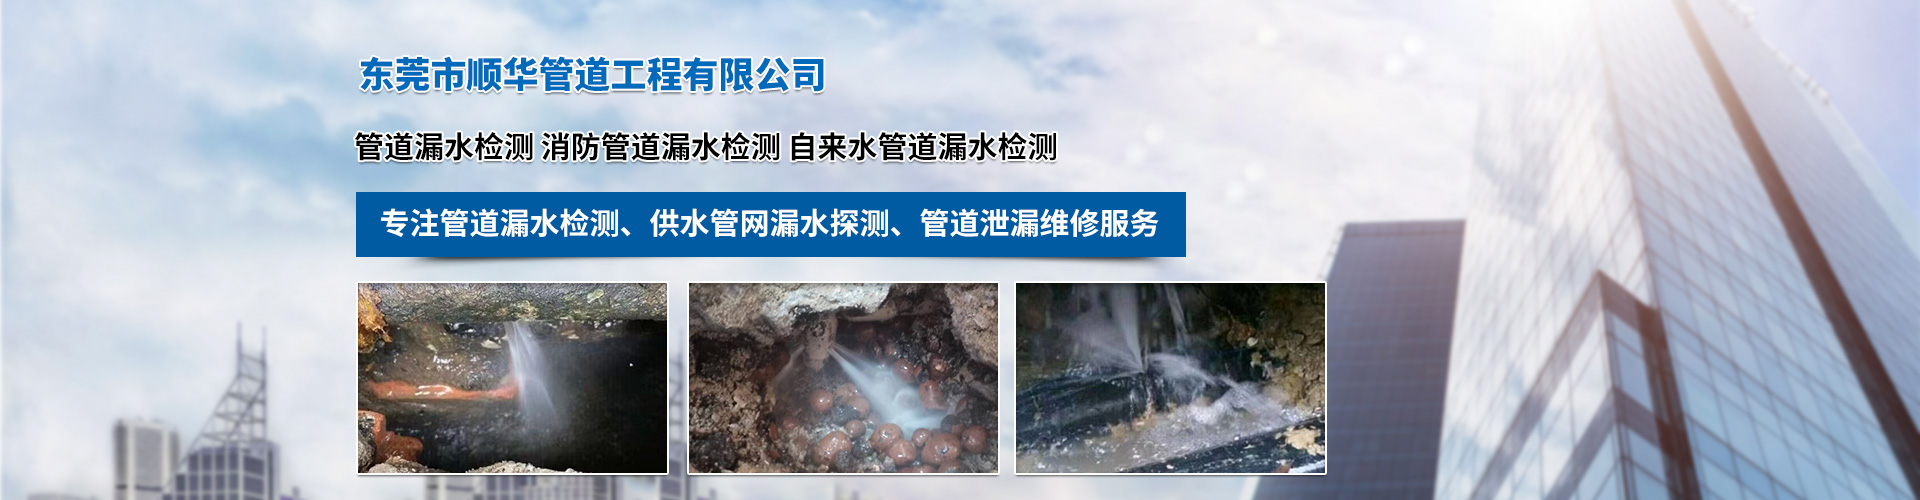 埋地水管漏水如何探测 深圳市测漏水管漏水维修服务